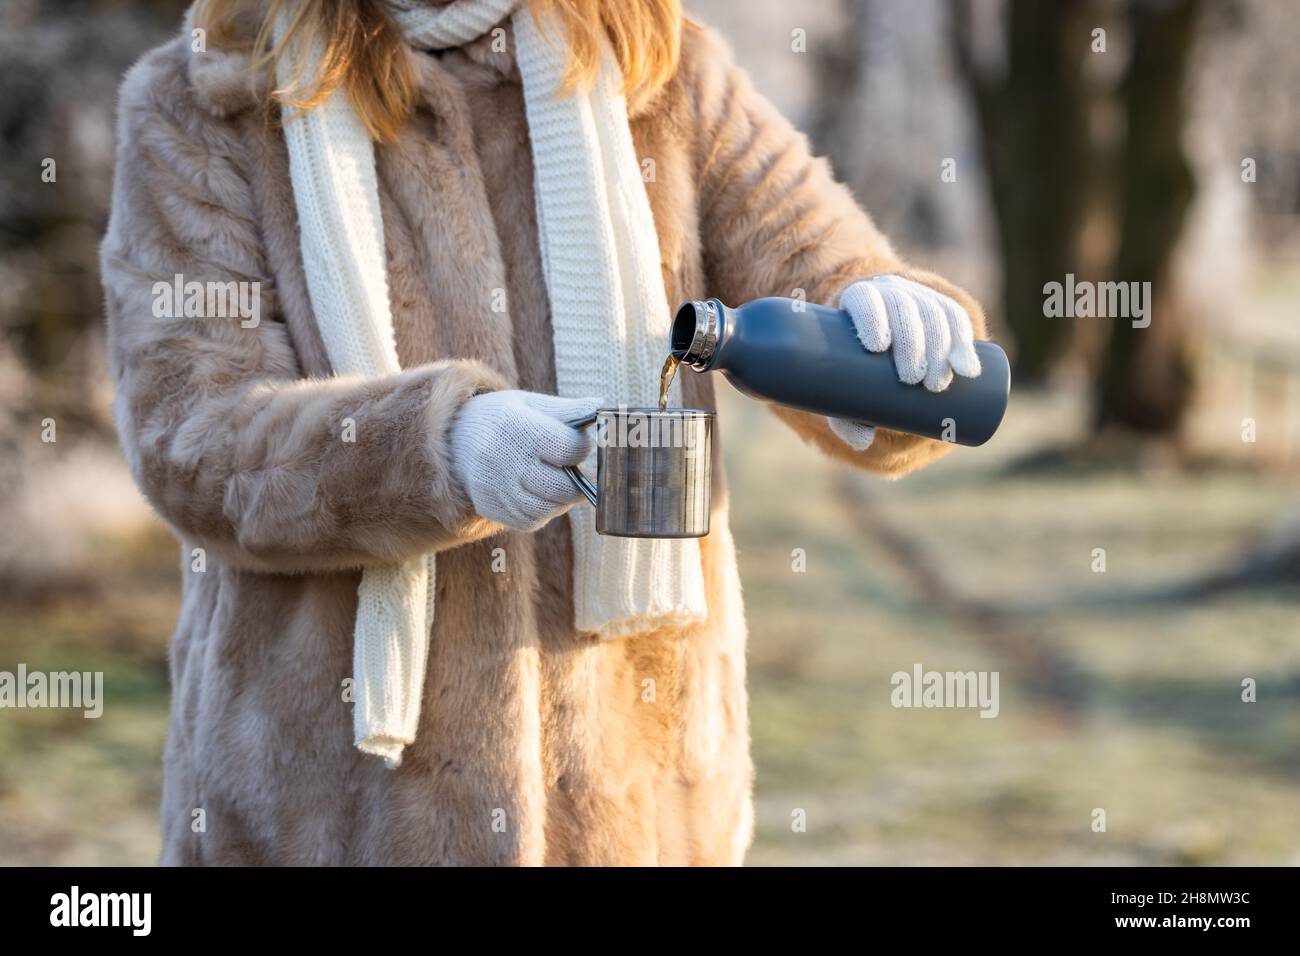 La donna versa una bevanda calda dai thermos nella tazza metallica. Rinfresco nella natura invernale. La donna indossa un cappotto in pelliccia, una sciarpa a maglia e un guanto. Foto Stock